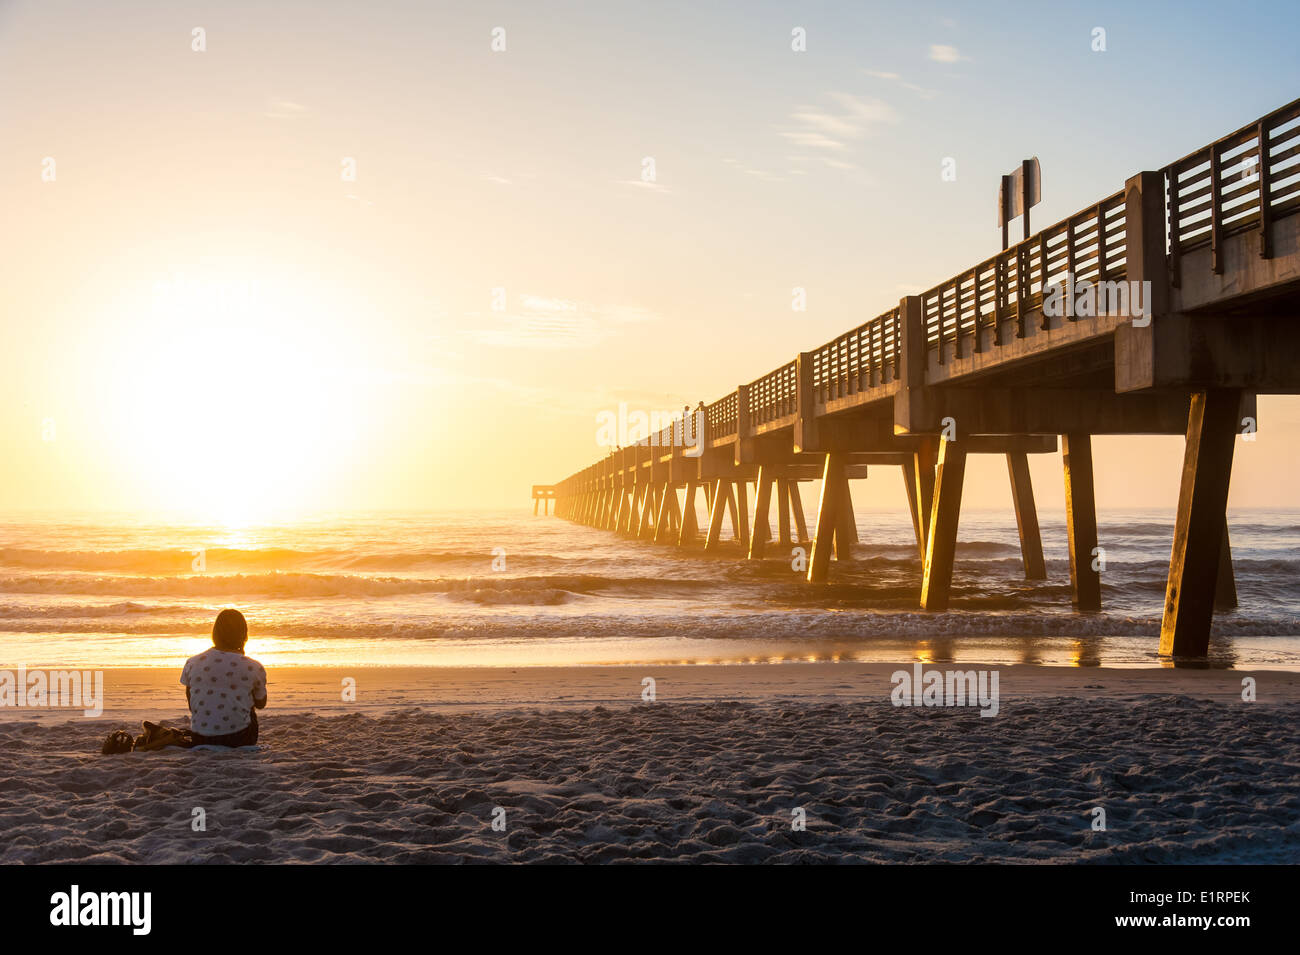 Junge Frau im Hintergrund eintauchen in die Schönheit und Wunder von einem dramatischen Sonnenaufgang in Jacksonville Beach, Florida, USA. Stockfoto